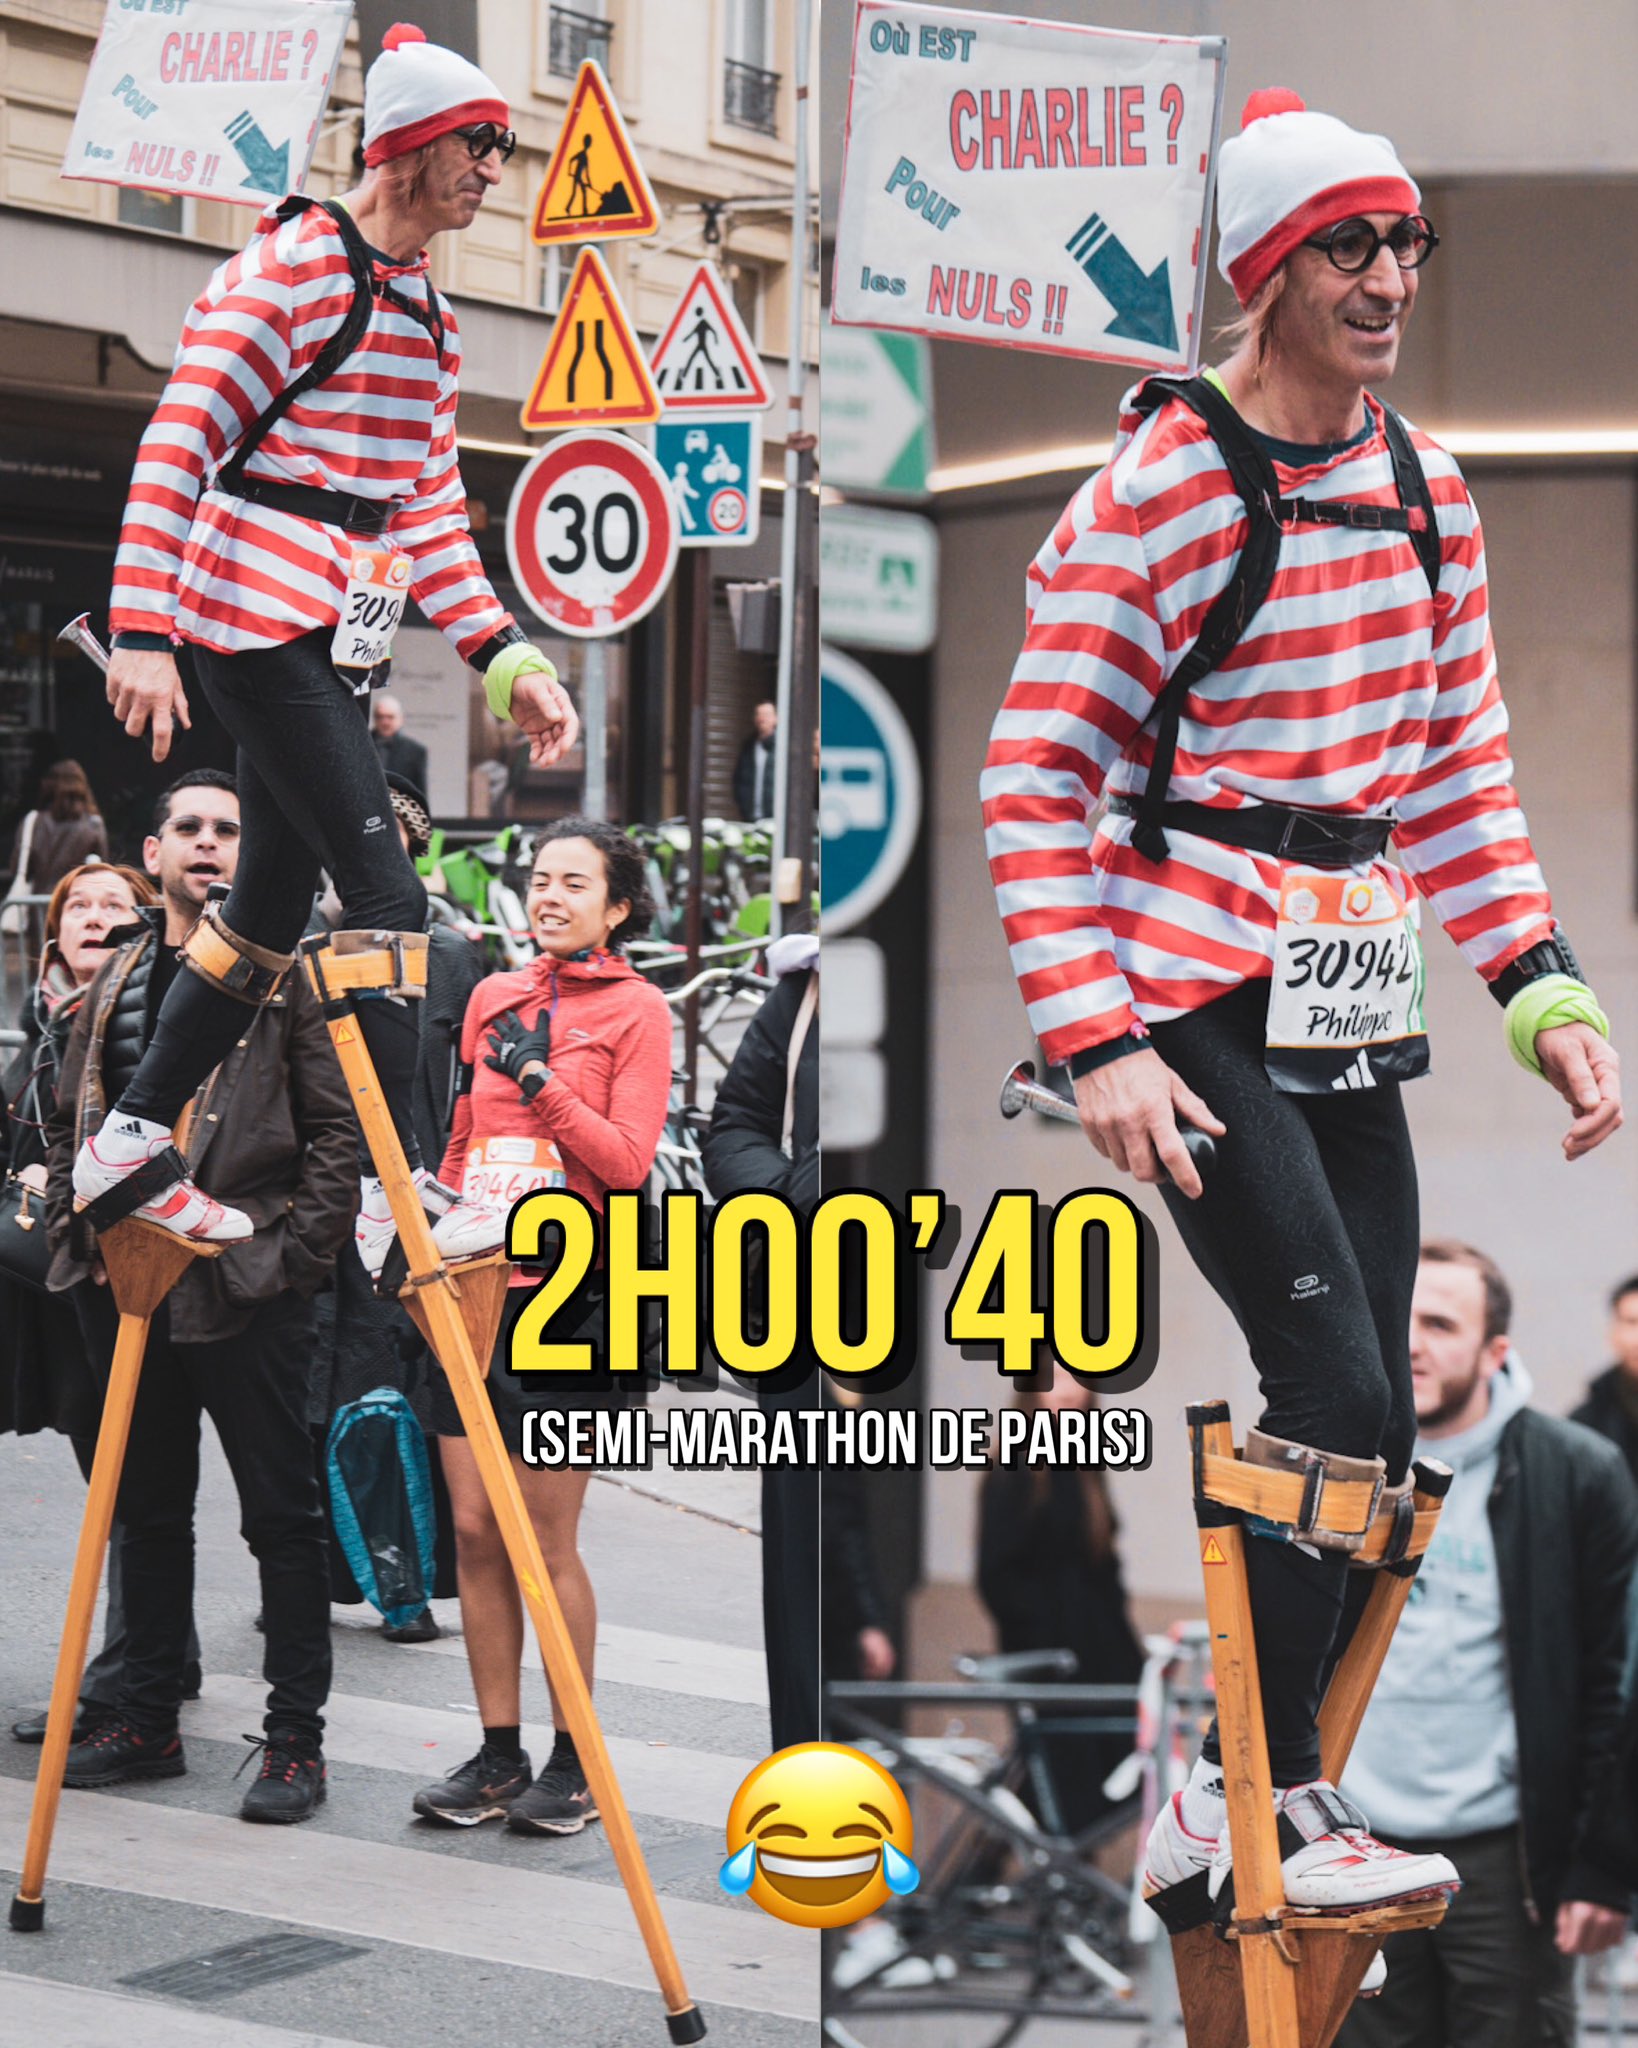 RUN'IX on X: 😝 L'info (insolite) du jour : 2H00.40 au semi-marathon de  Paris sur des échasses en bois ! Fantasque performance établie par Philippe  Graciette (🇫🇷) hier matin. 5:43/km de moyenne (